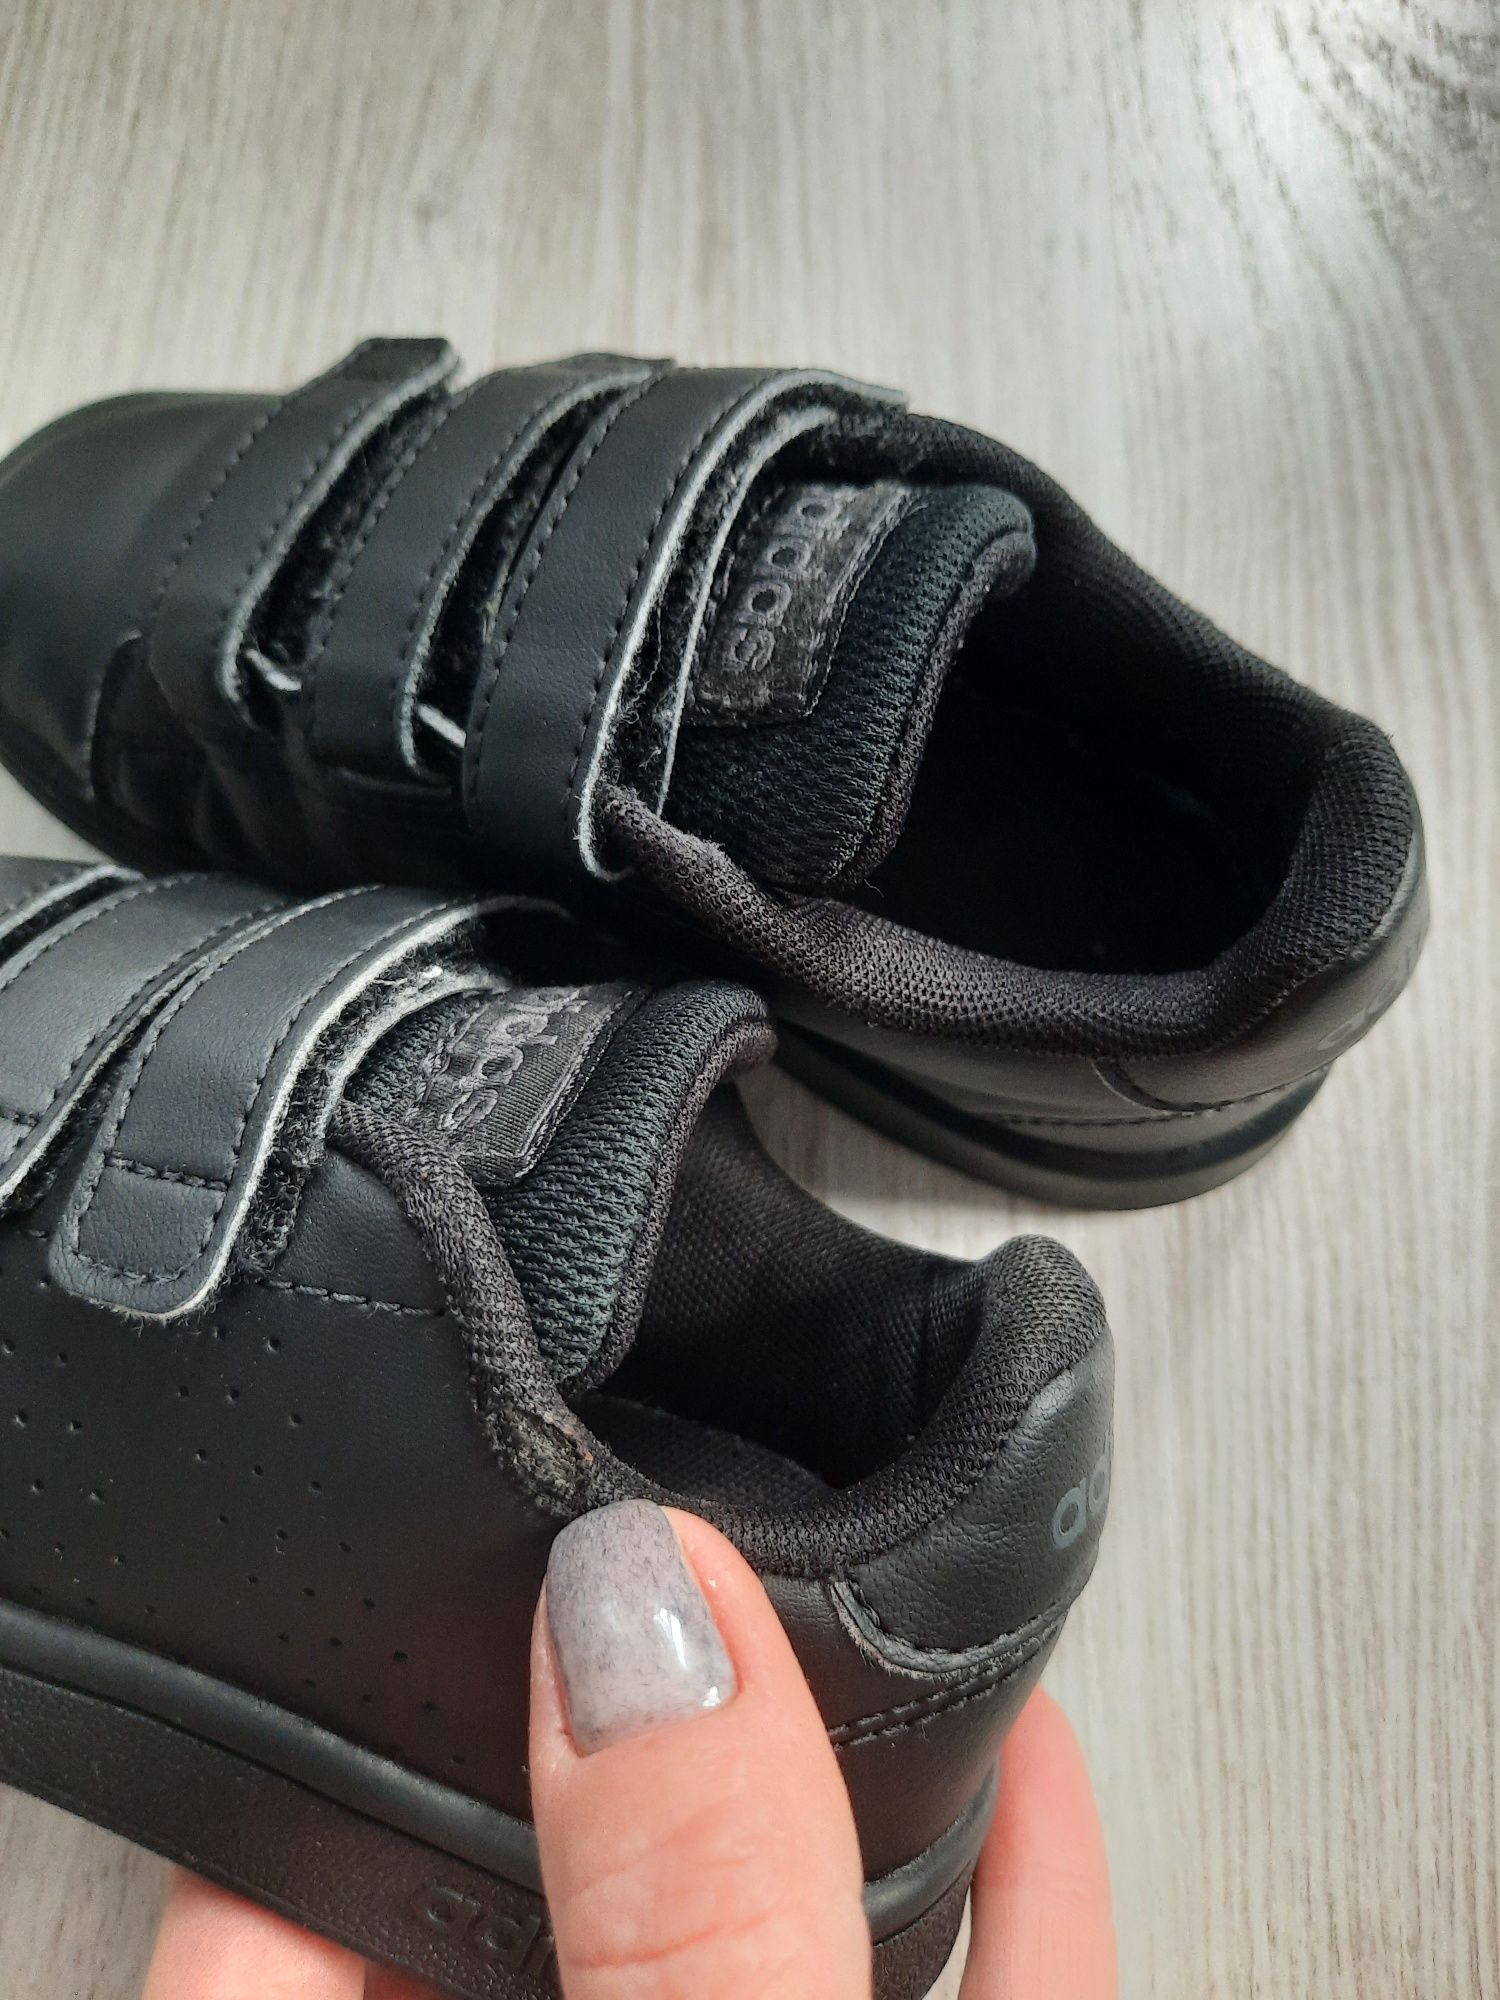 Кожаные кроссовки кросівки на липучках Adidas оригинал р.28 18см